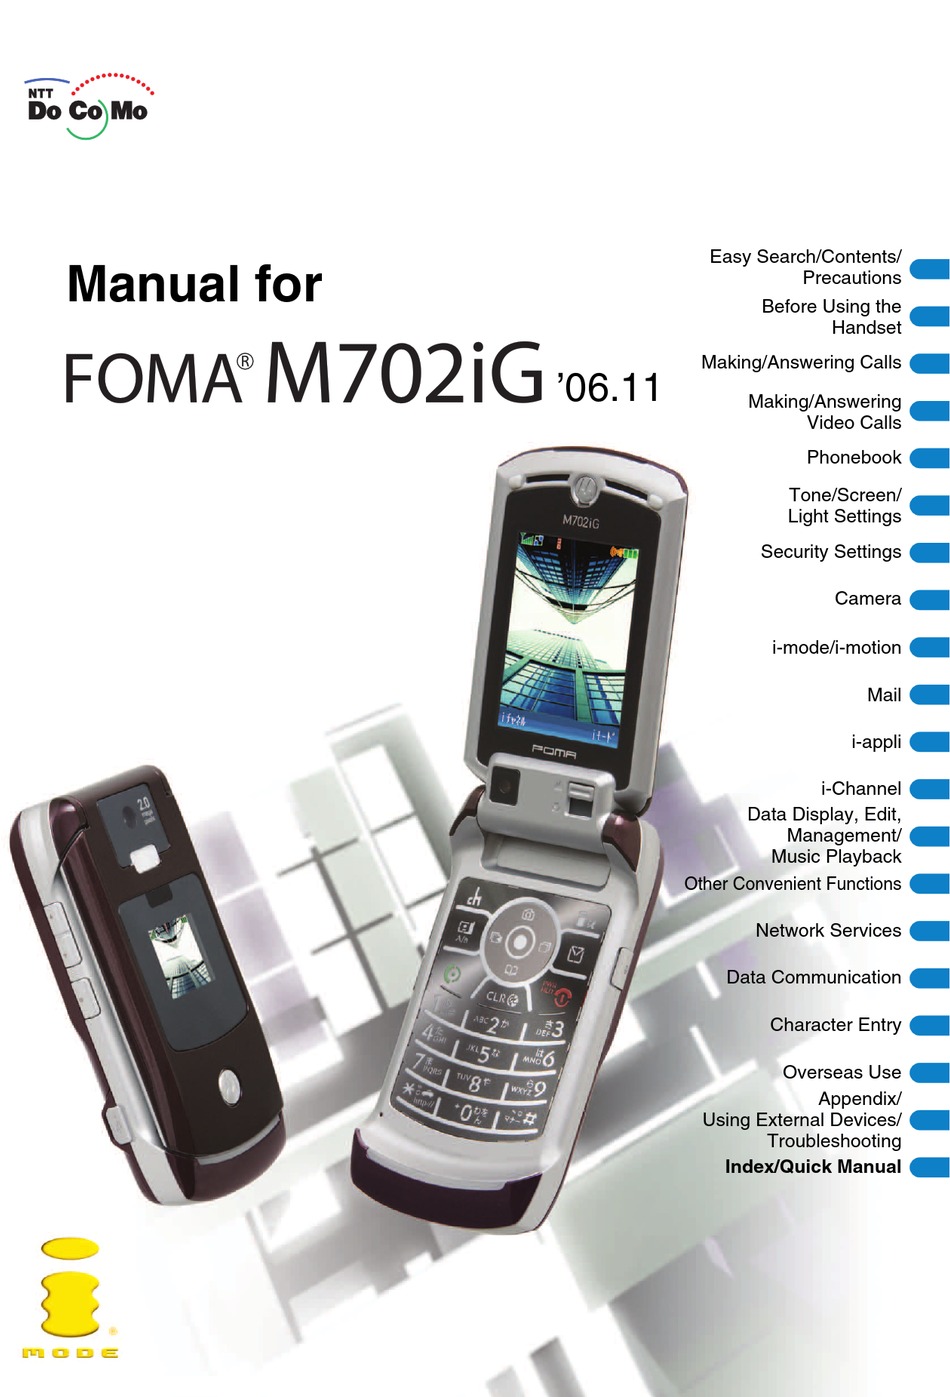 MOTOROLA FOMA M702IG MANUAL Pdf Download | ManualsLib